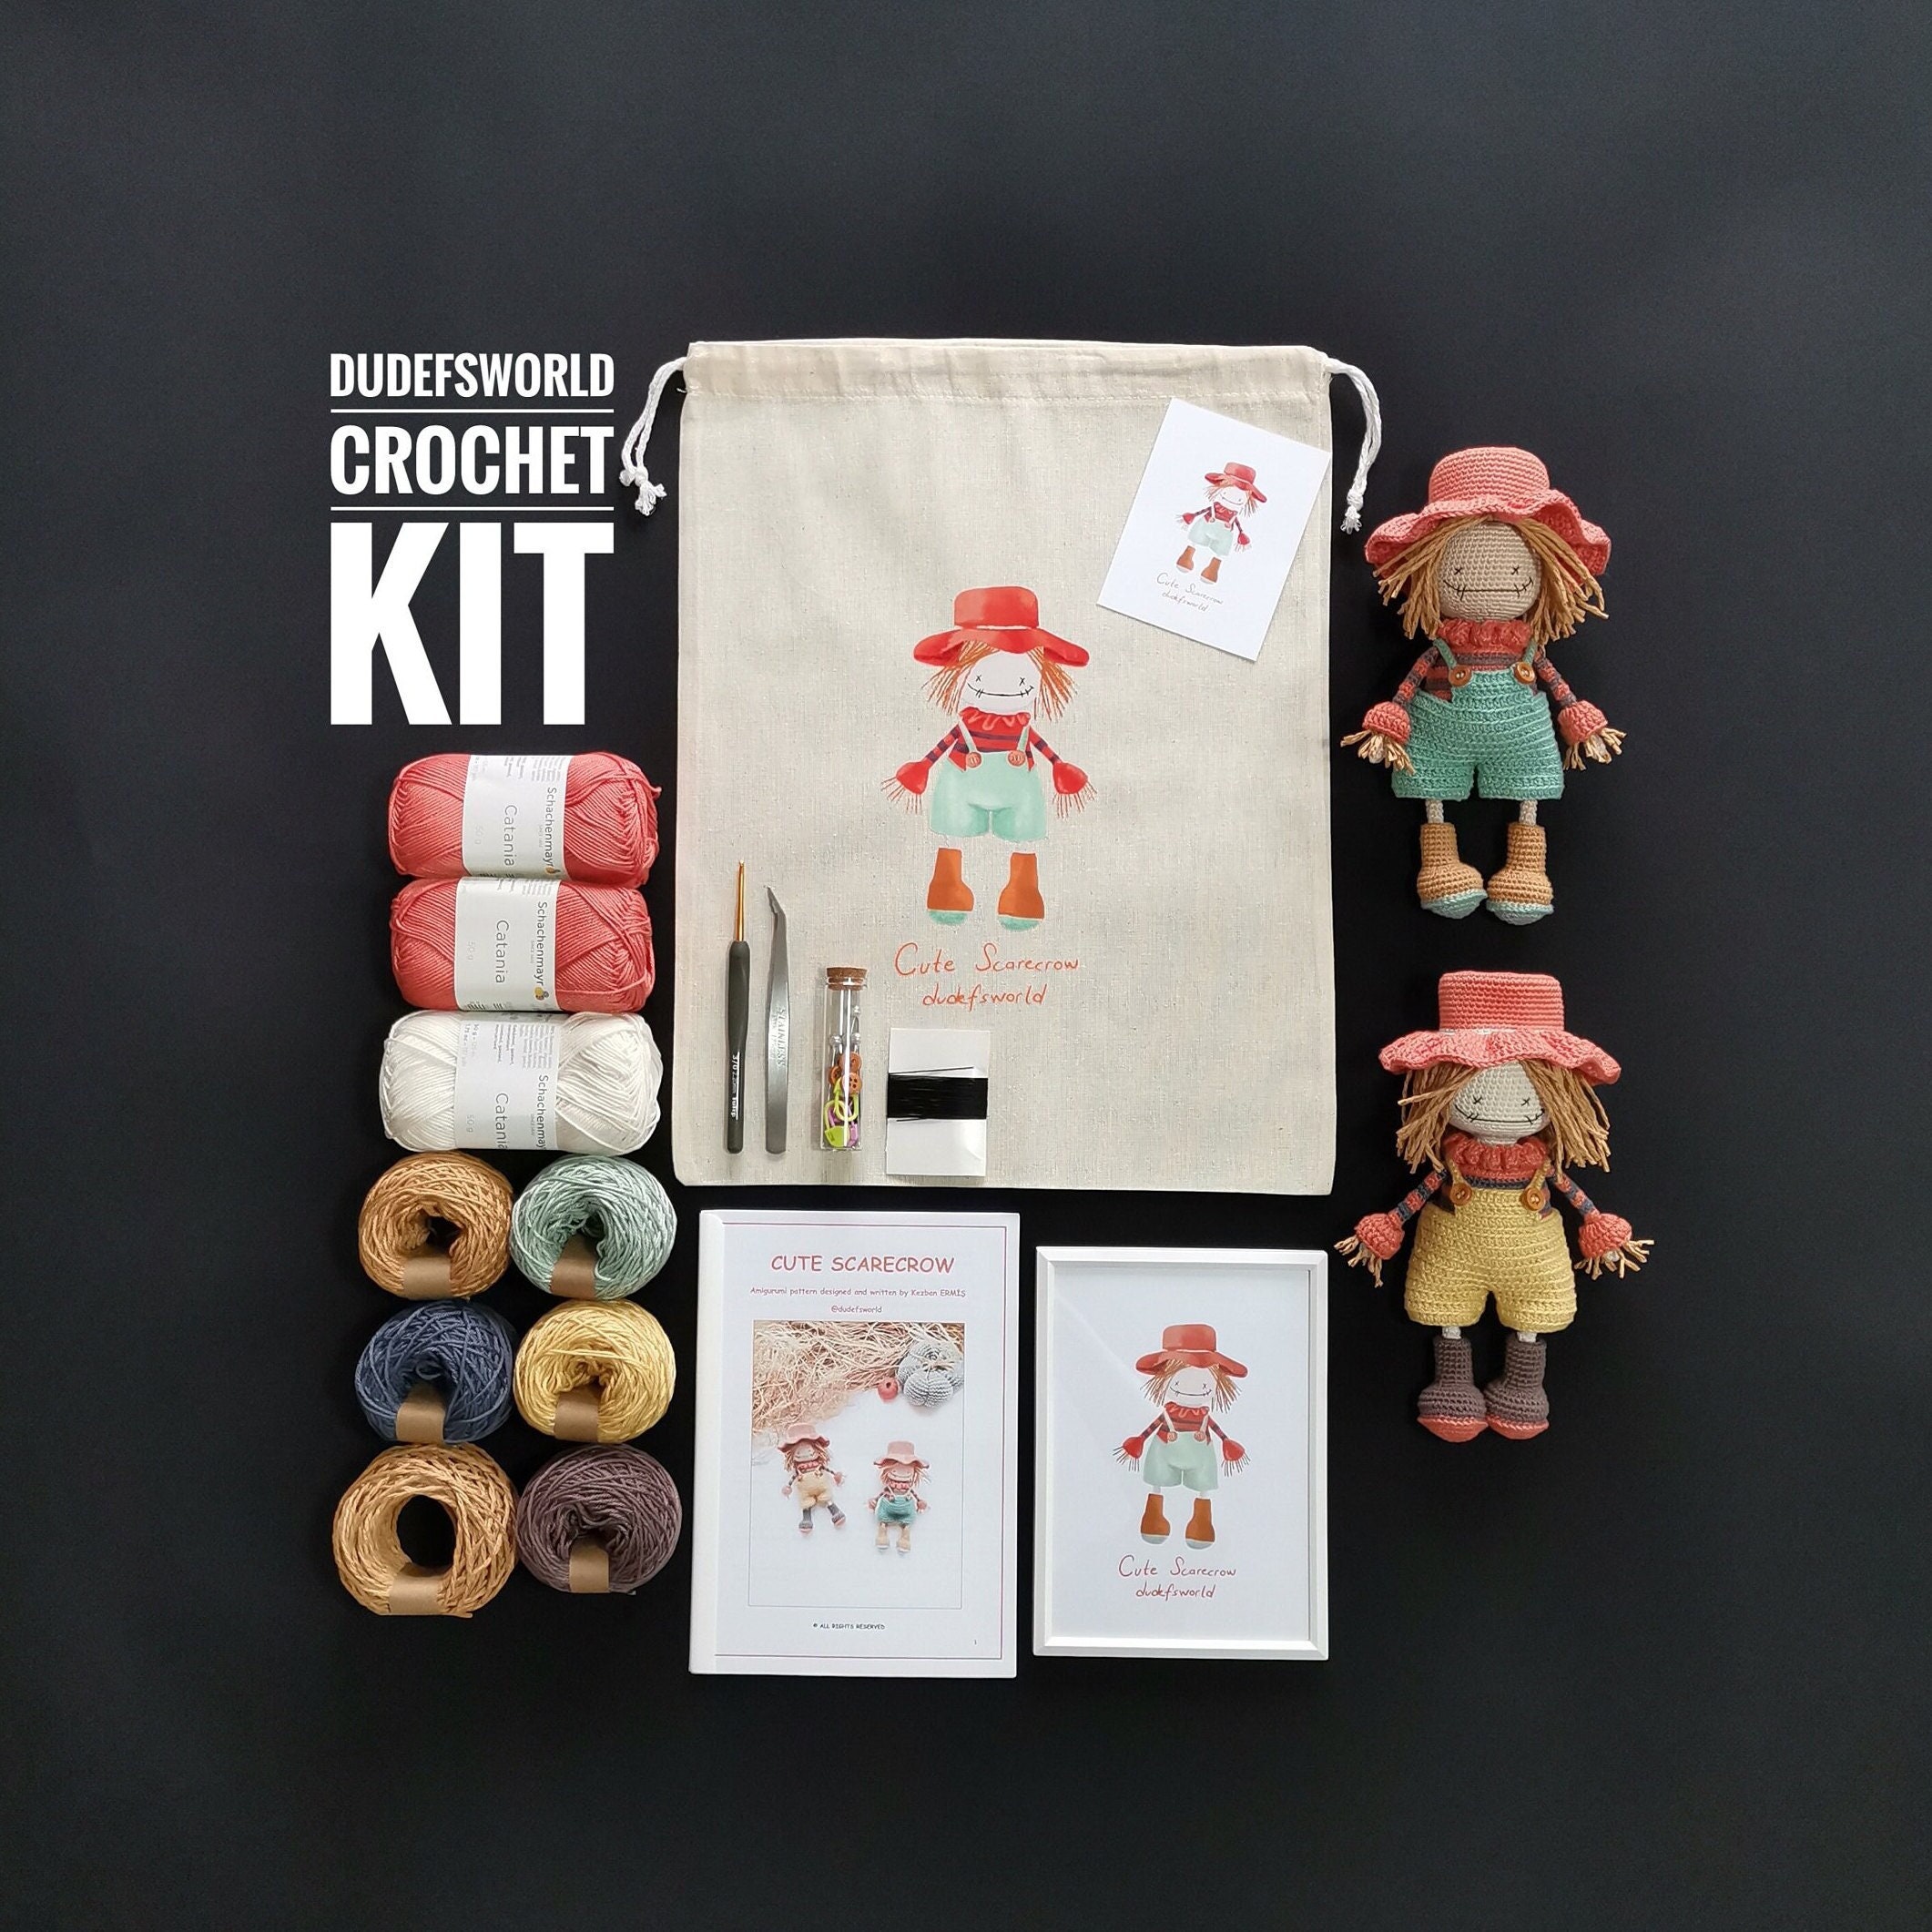 Beginner Chicken Crochet Kit Easy Crochet Starter Kit Crochet